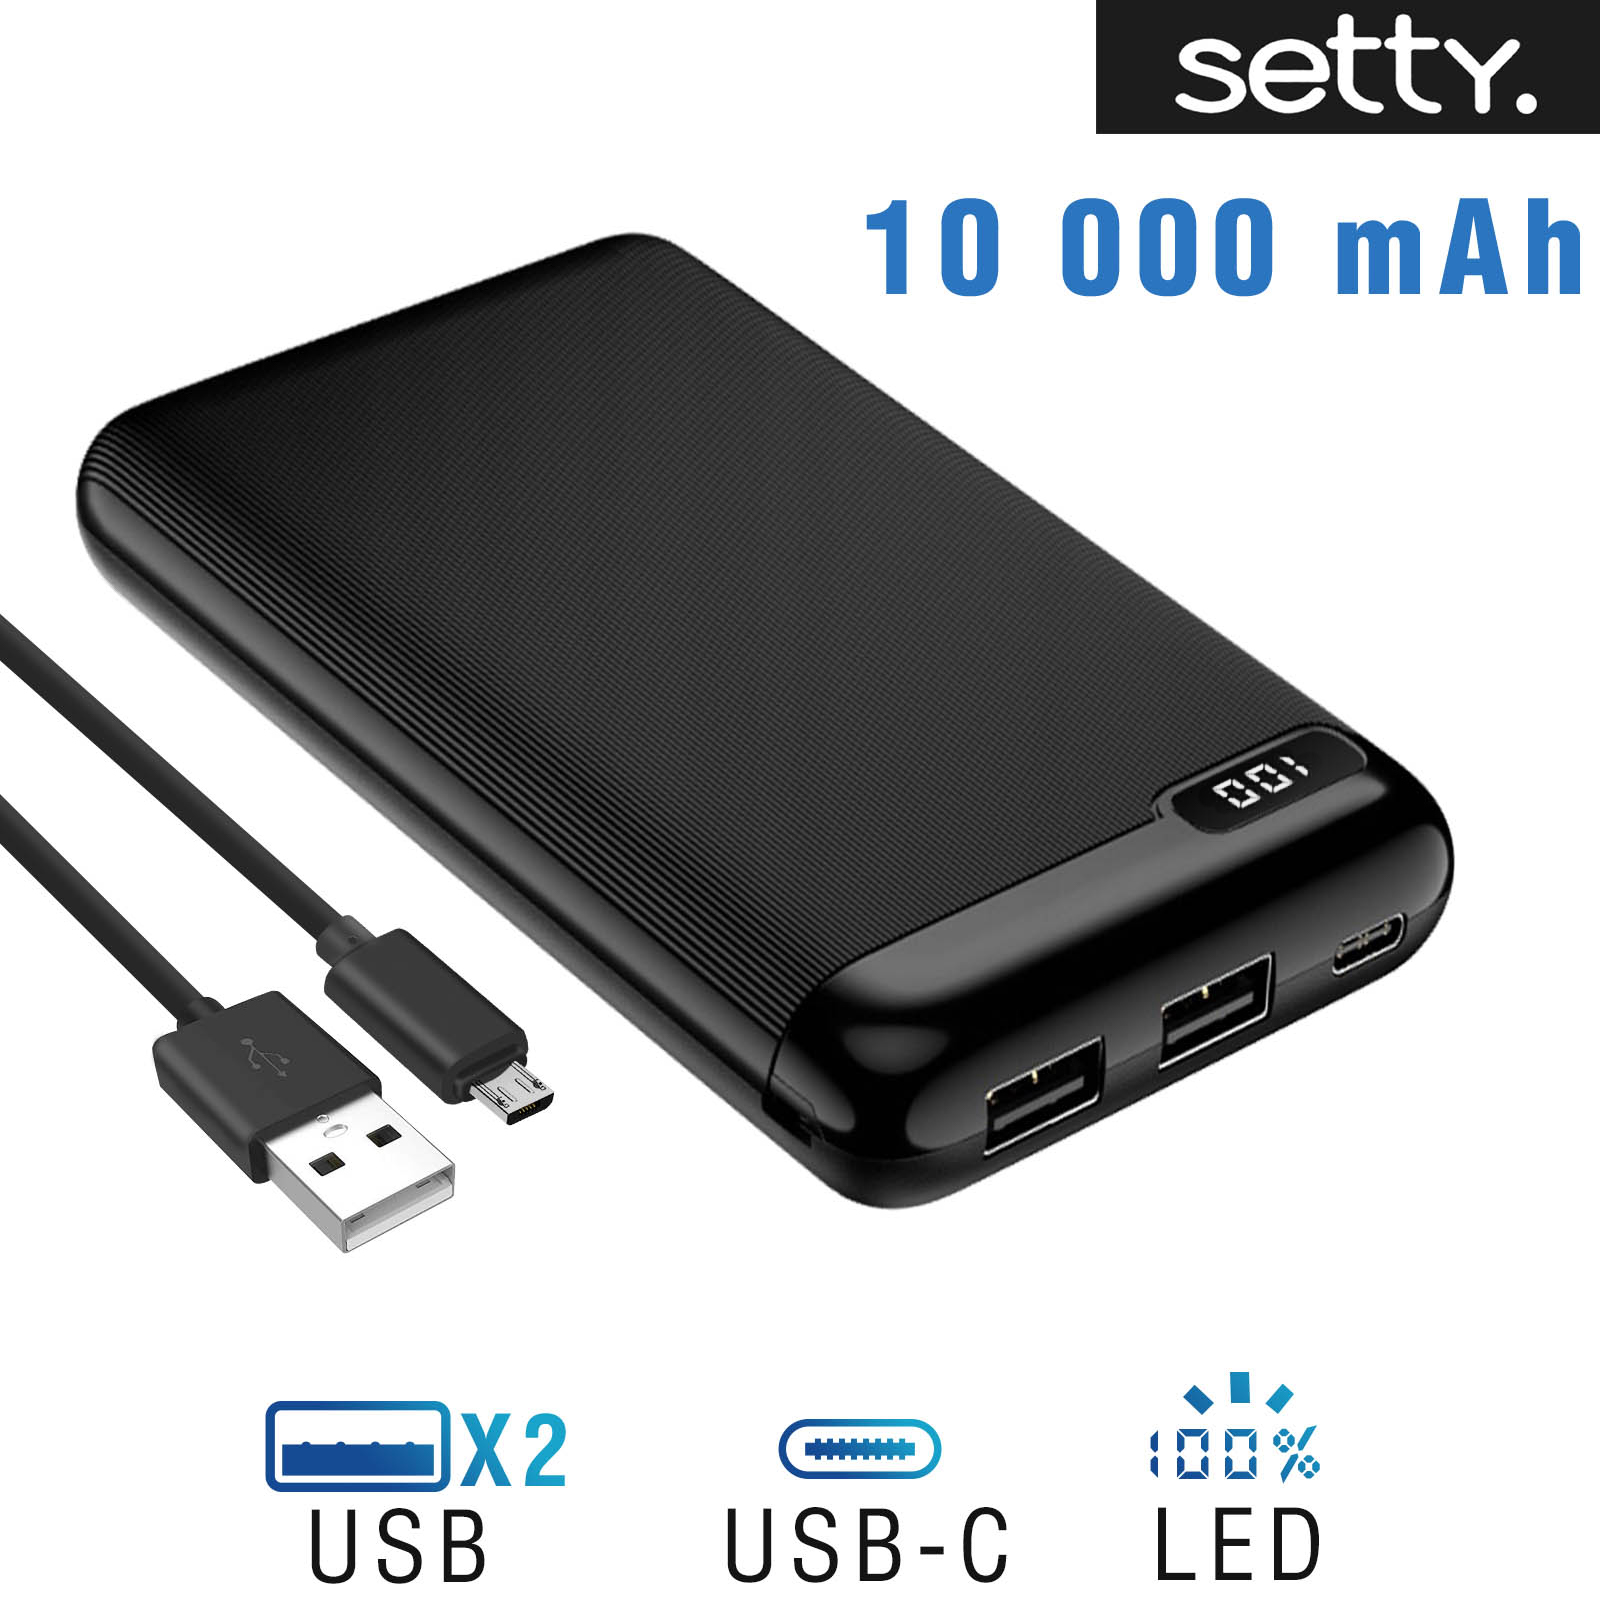 Batterie externe 10000mAh avec 2 sorties USB + Affichage LED numérique,  Setty - Noir - Français